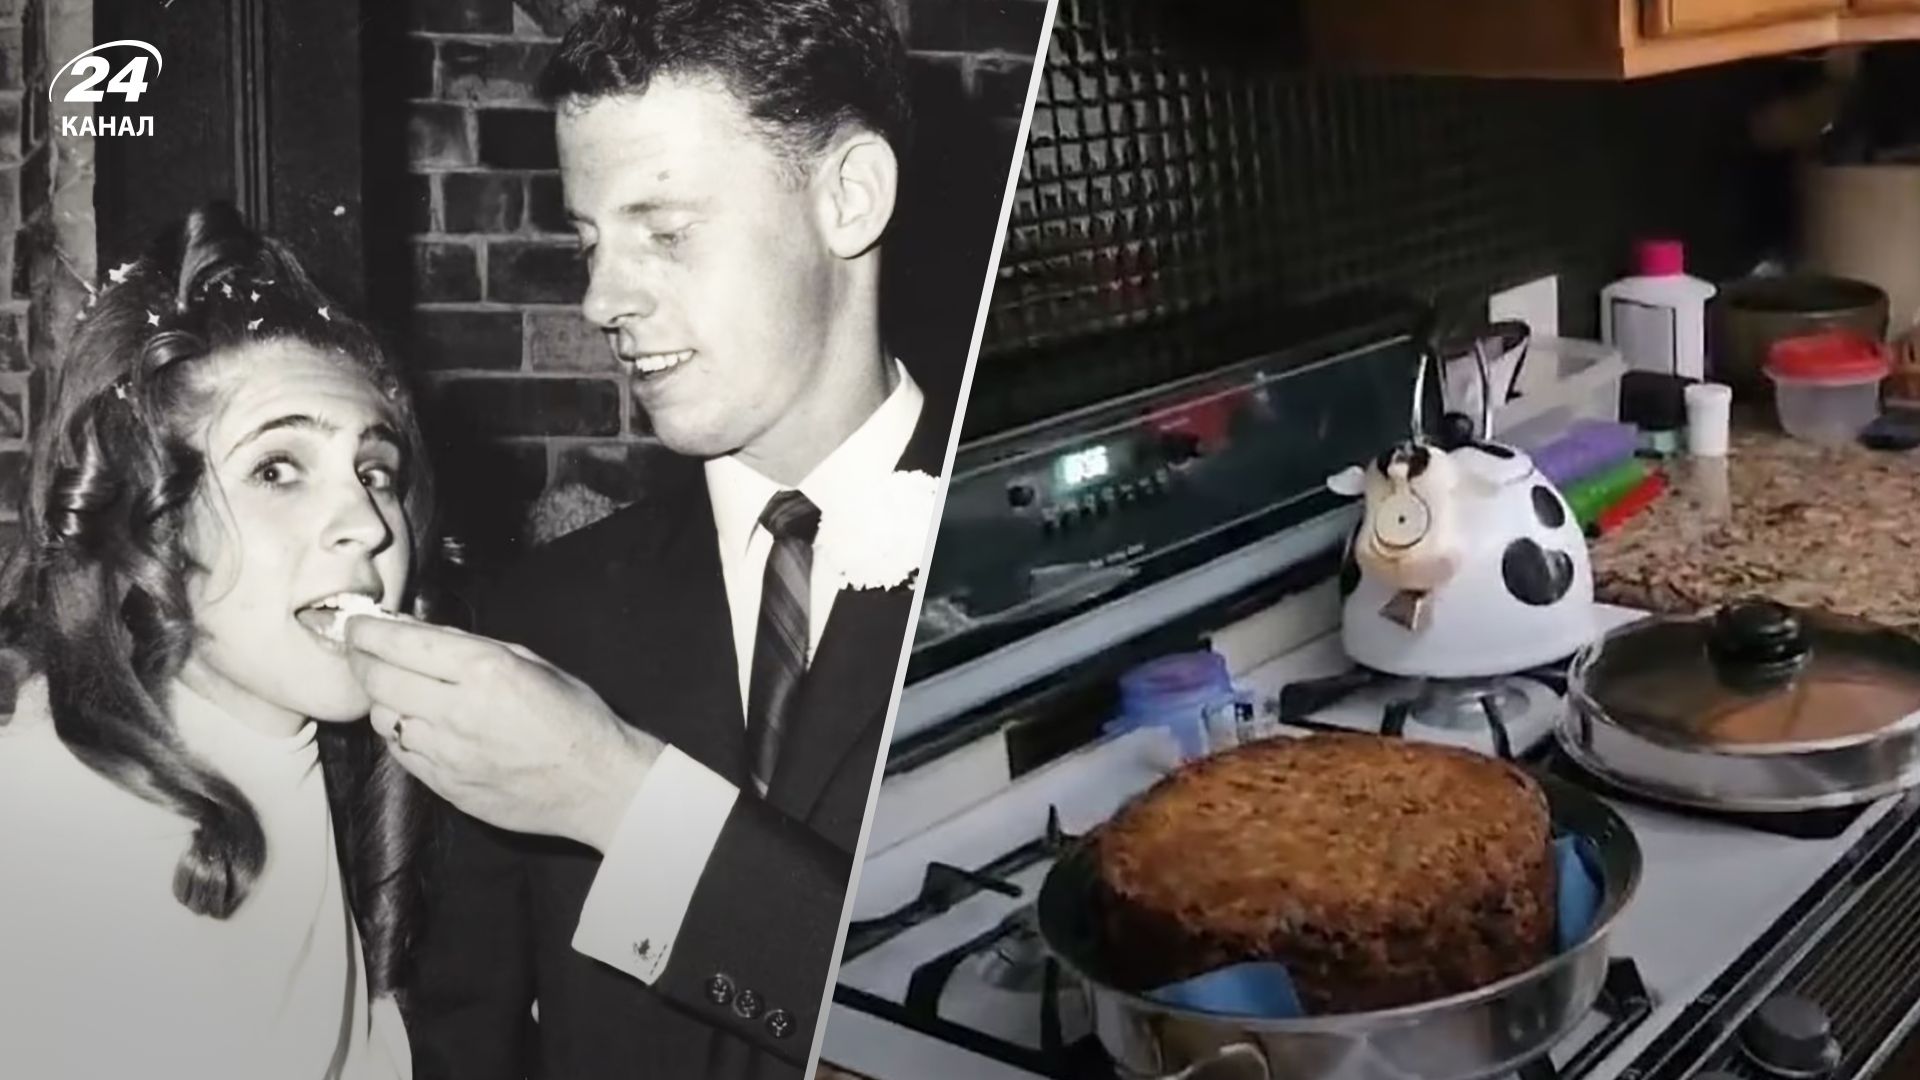 Рошель Марр знайшла свій весільний торт у морозилці через 55 років після весілля